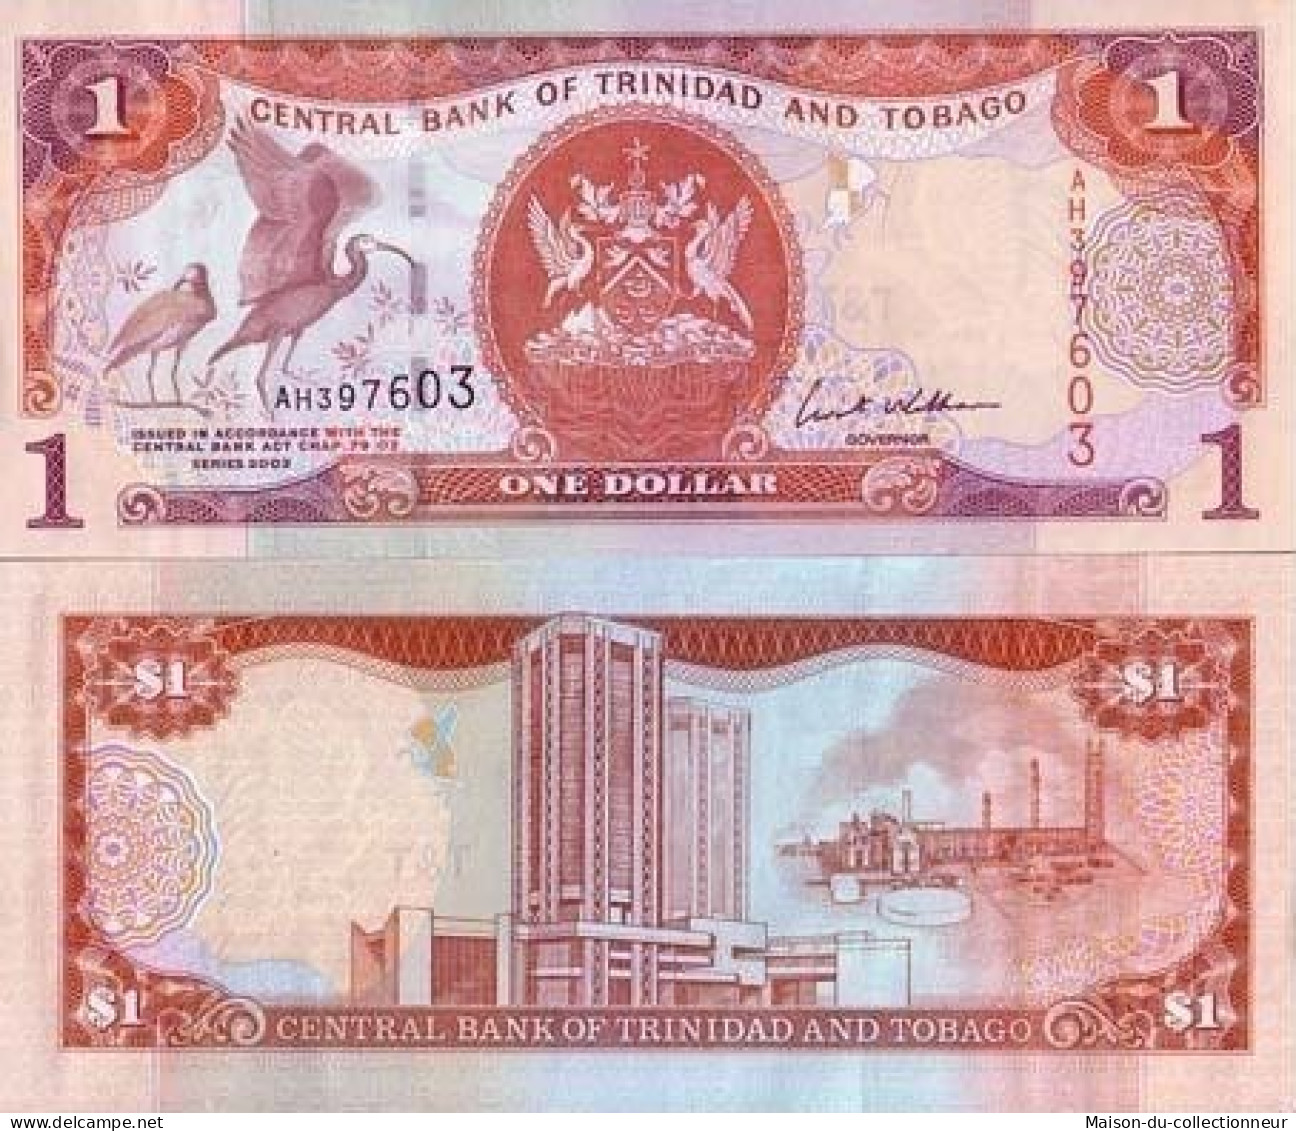 Billets De Banque Trinite & Tobago Pk N° 46 - 1 Dollars - Trinidad Y Tobago